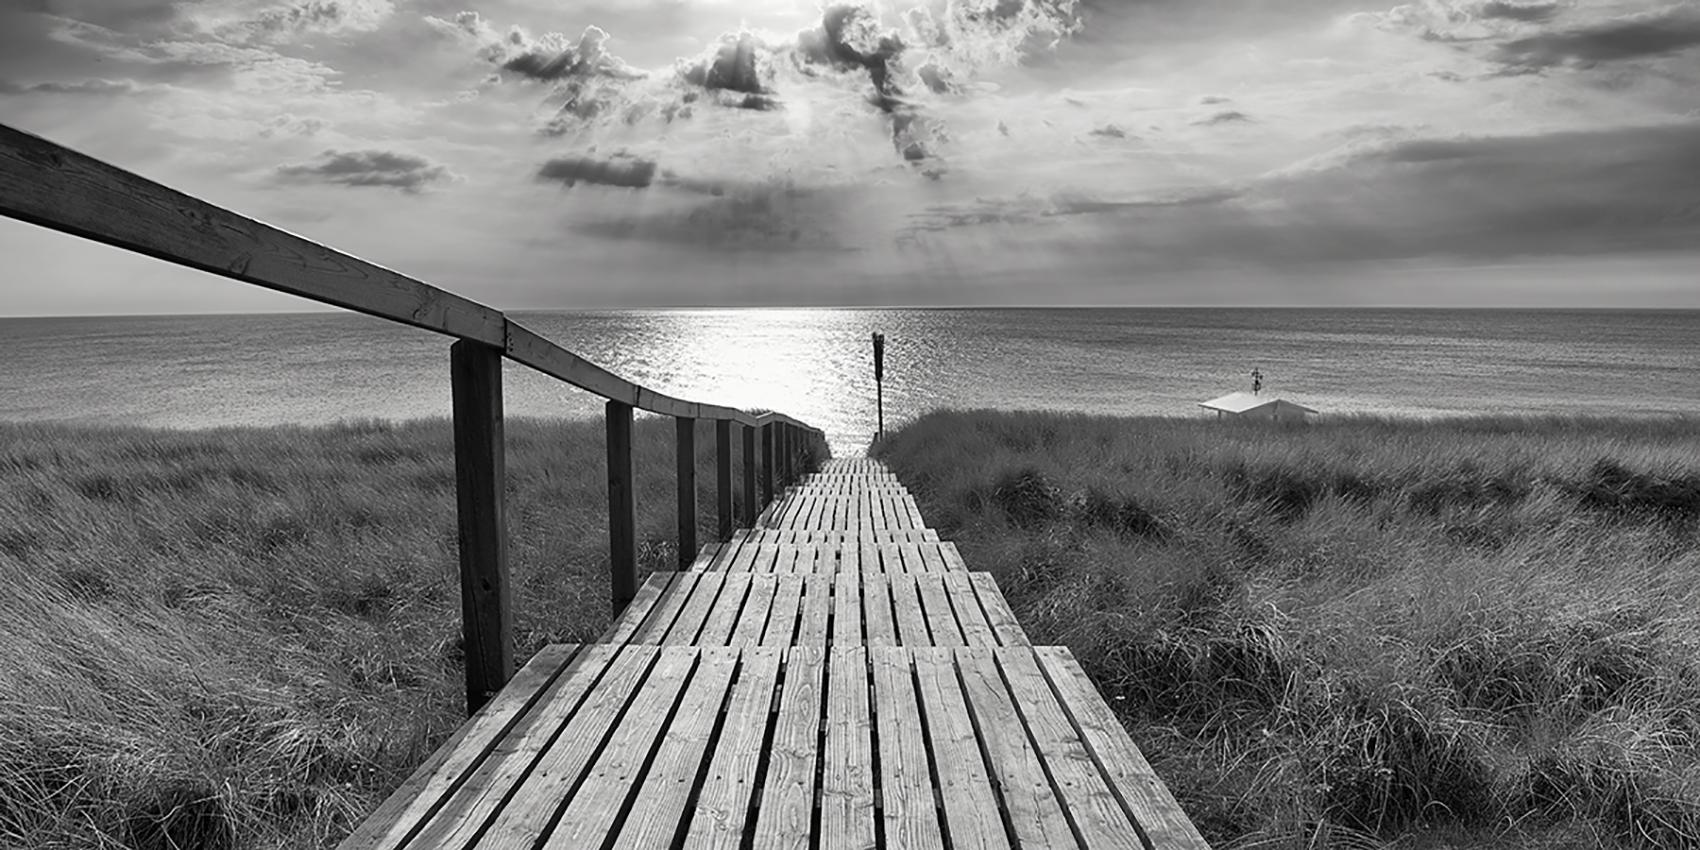 Michael Götze Landscape Photograph - Rantumer Steg - contemporary black/white photography ocean landscape, footbridge